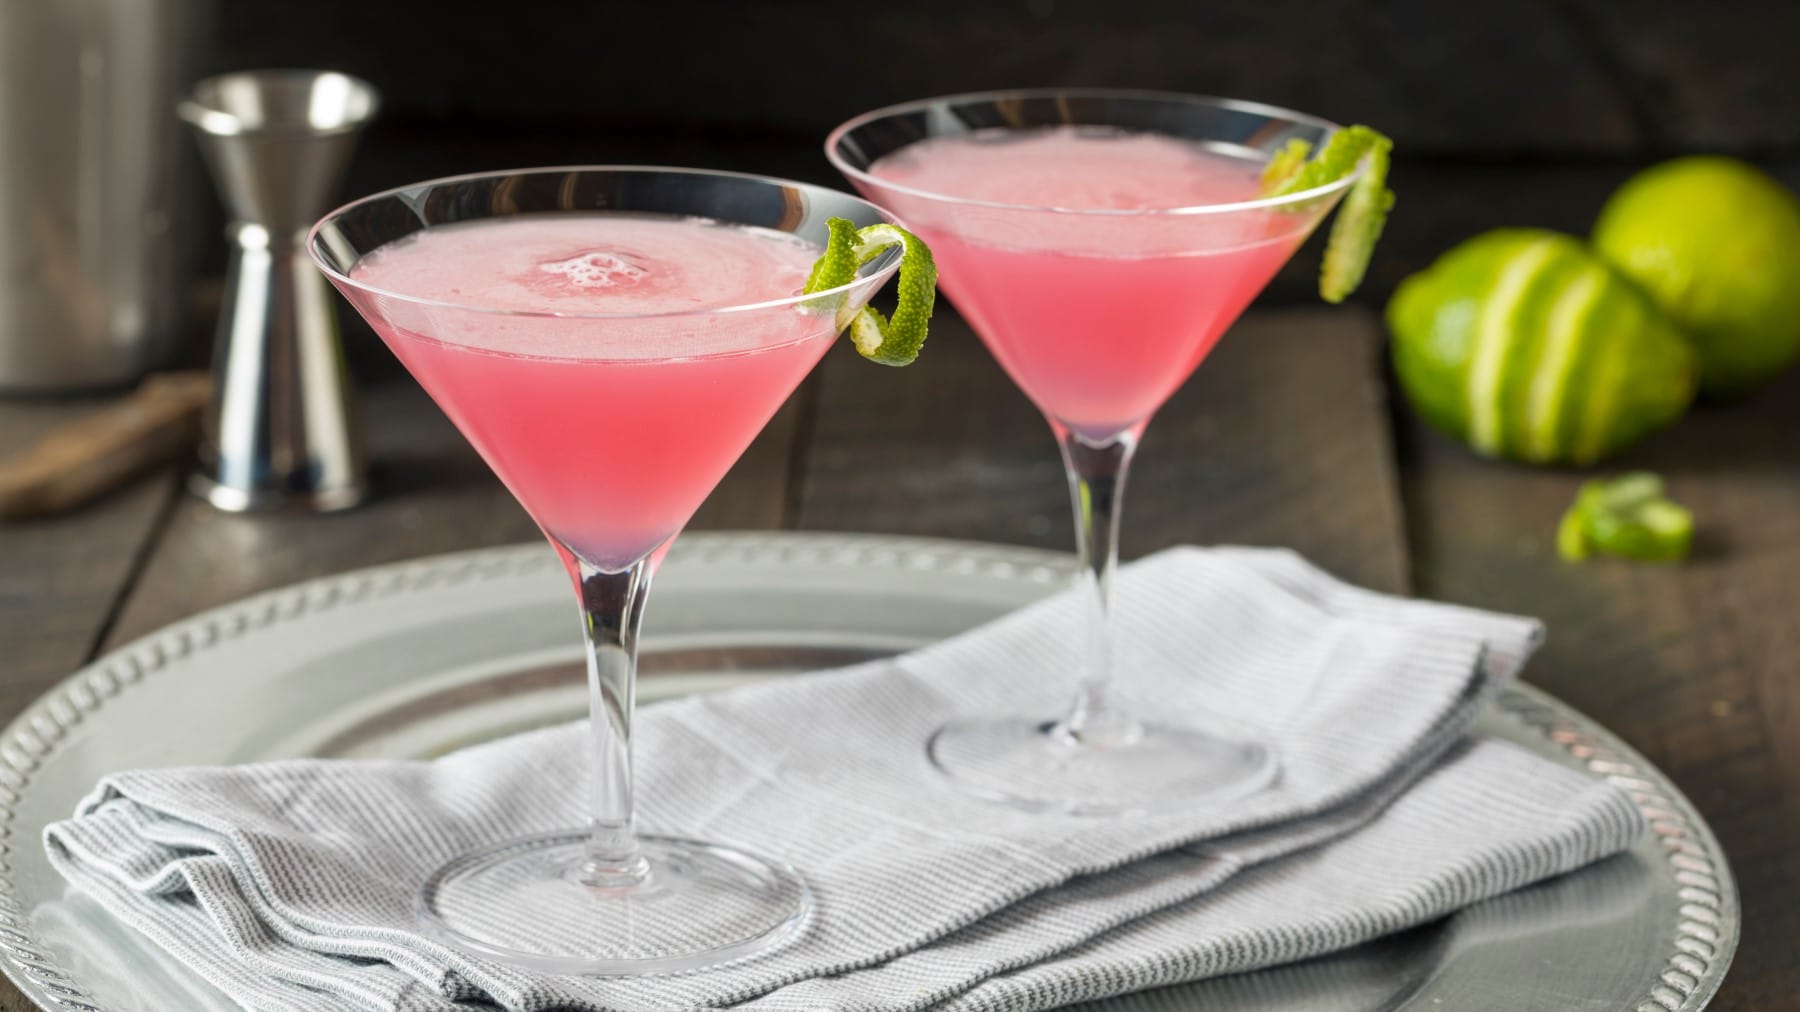 Zwei Martinigläser Pink Cosmo garniert mit Limettenschale auf einem hellen Tablett vor dunklem Hintergrund.